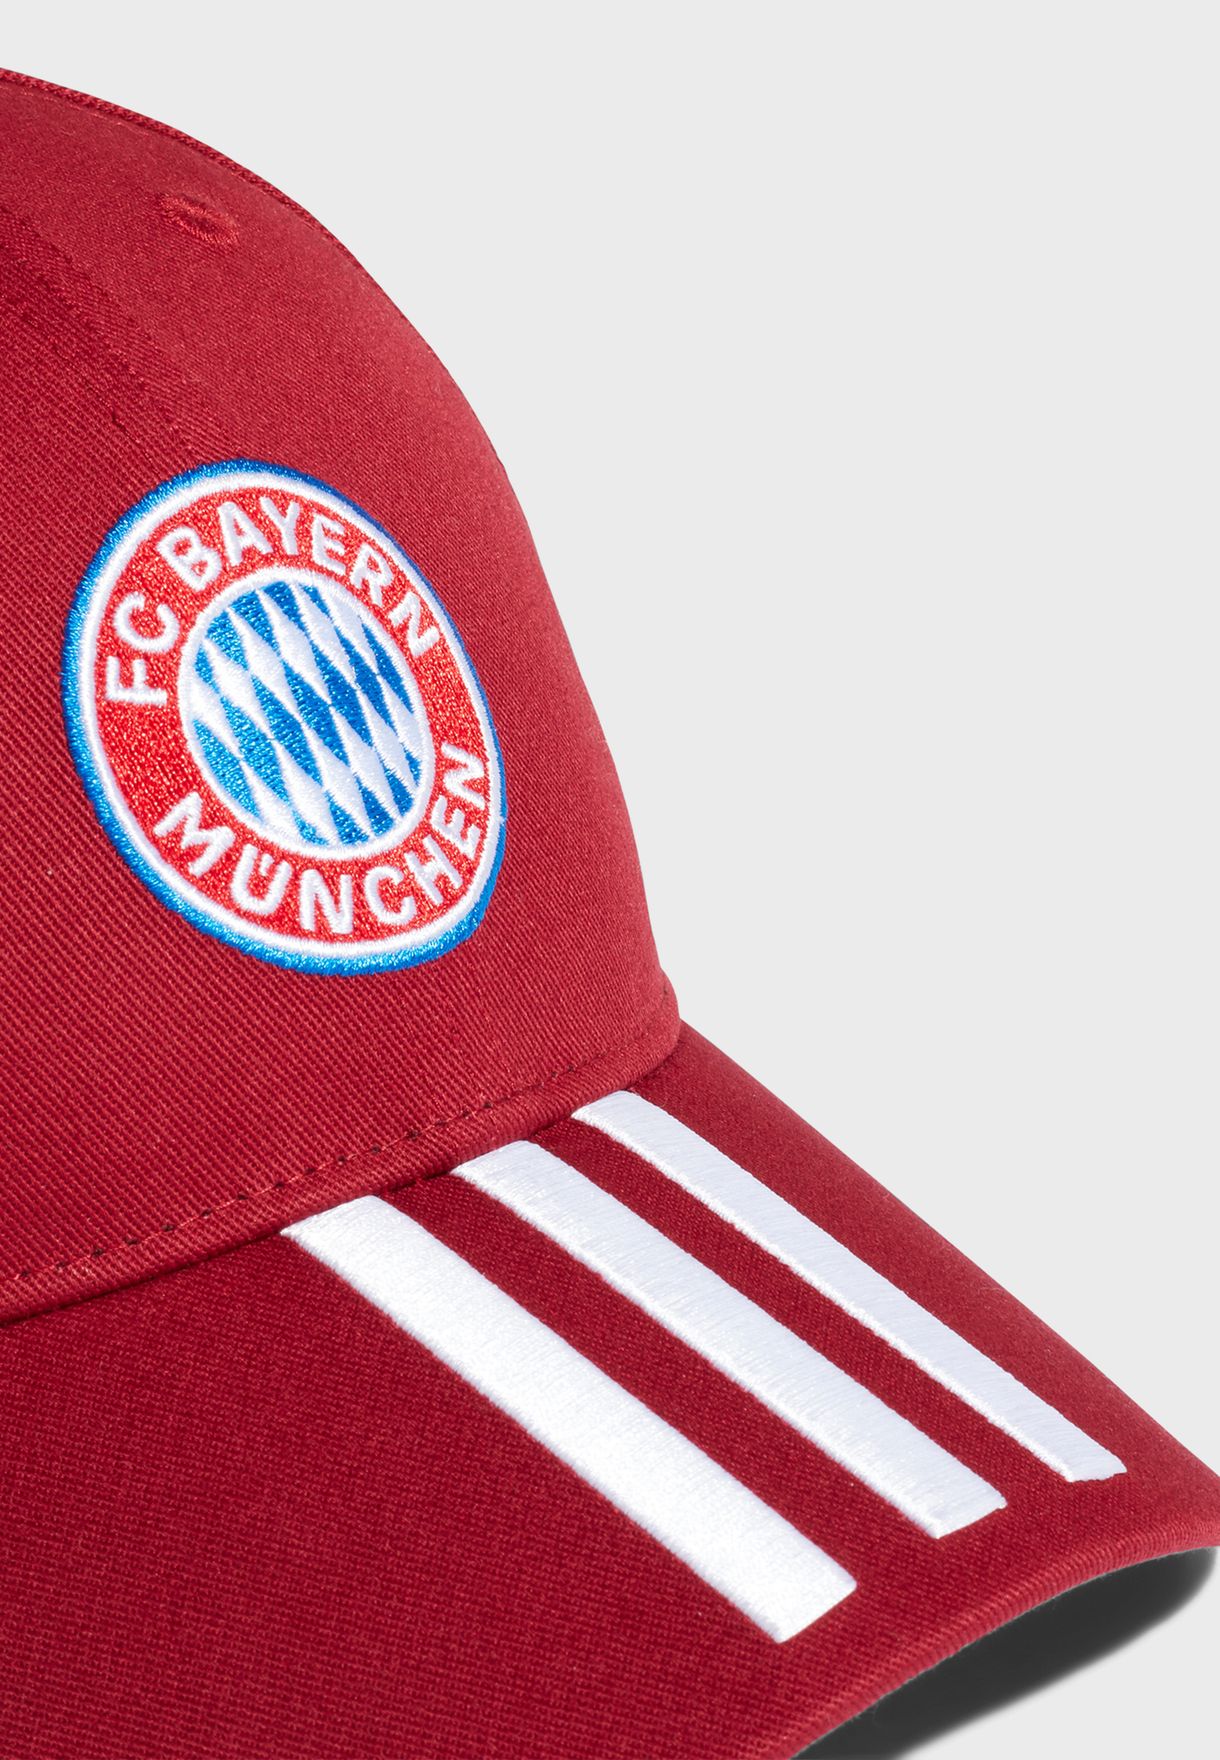 Fc Bayern Cap